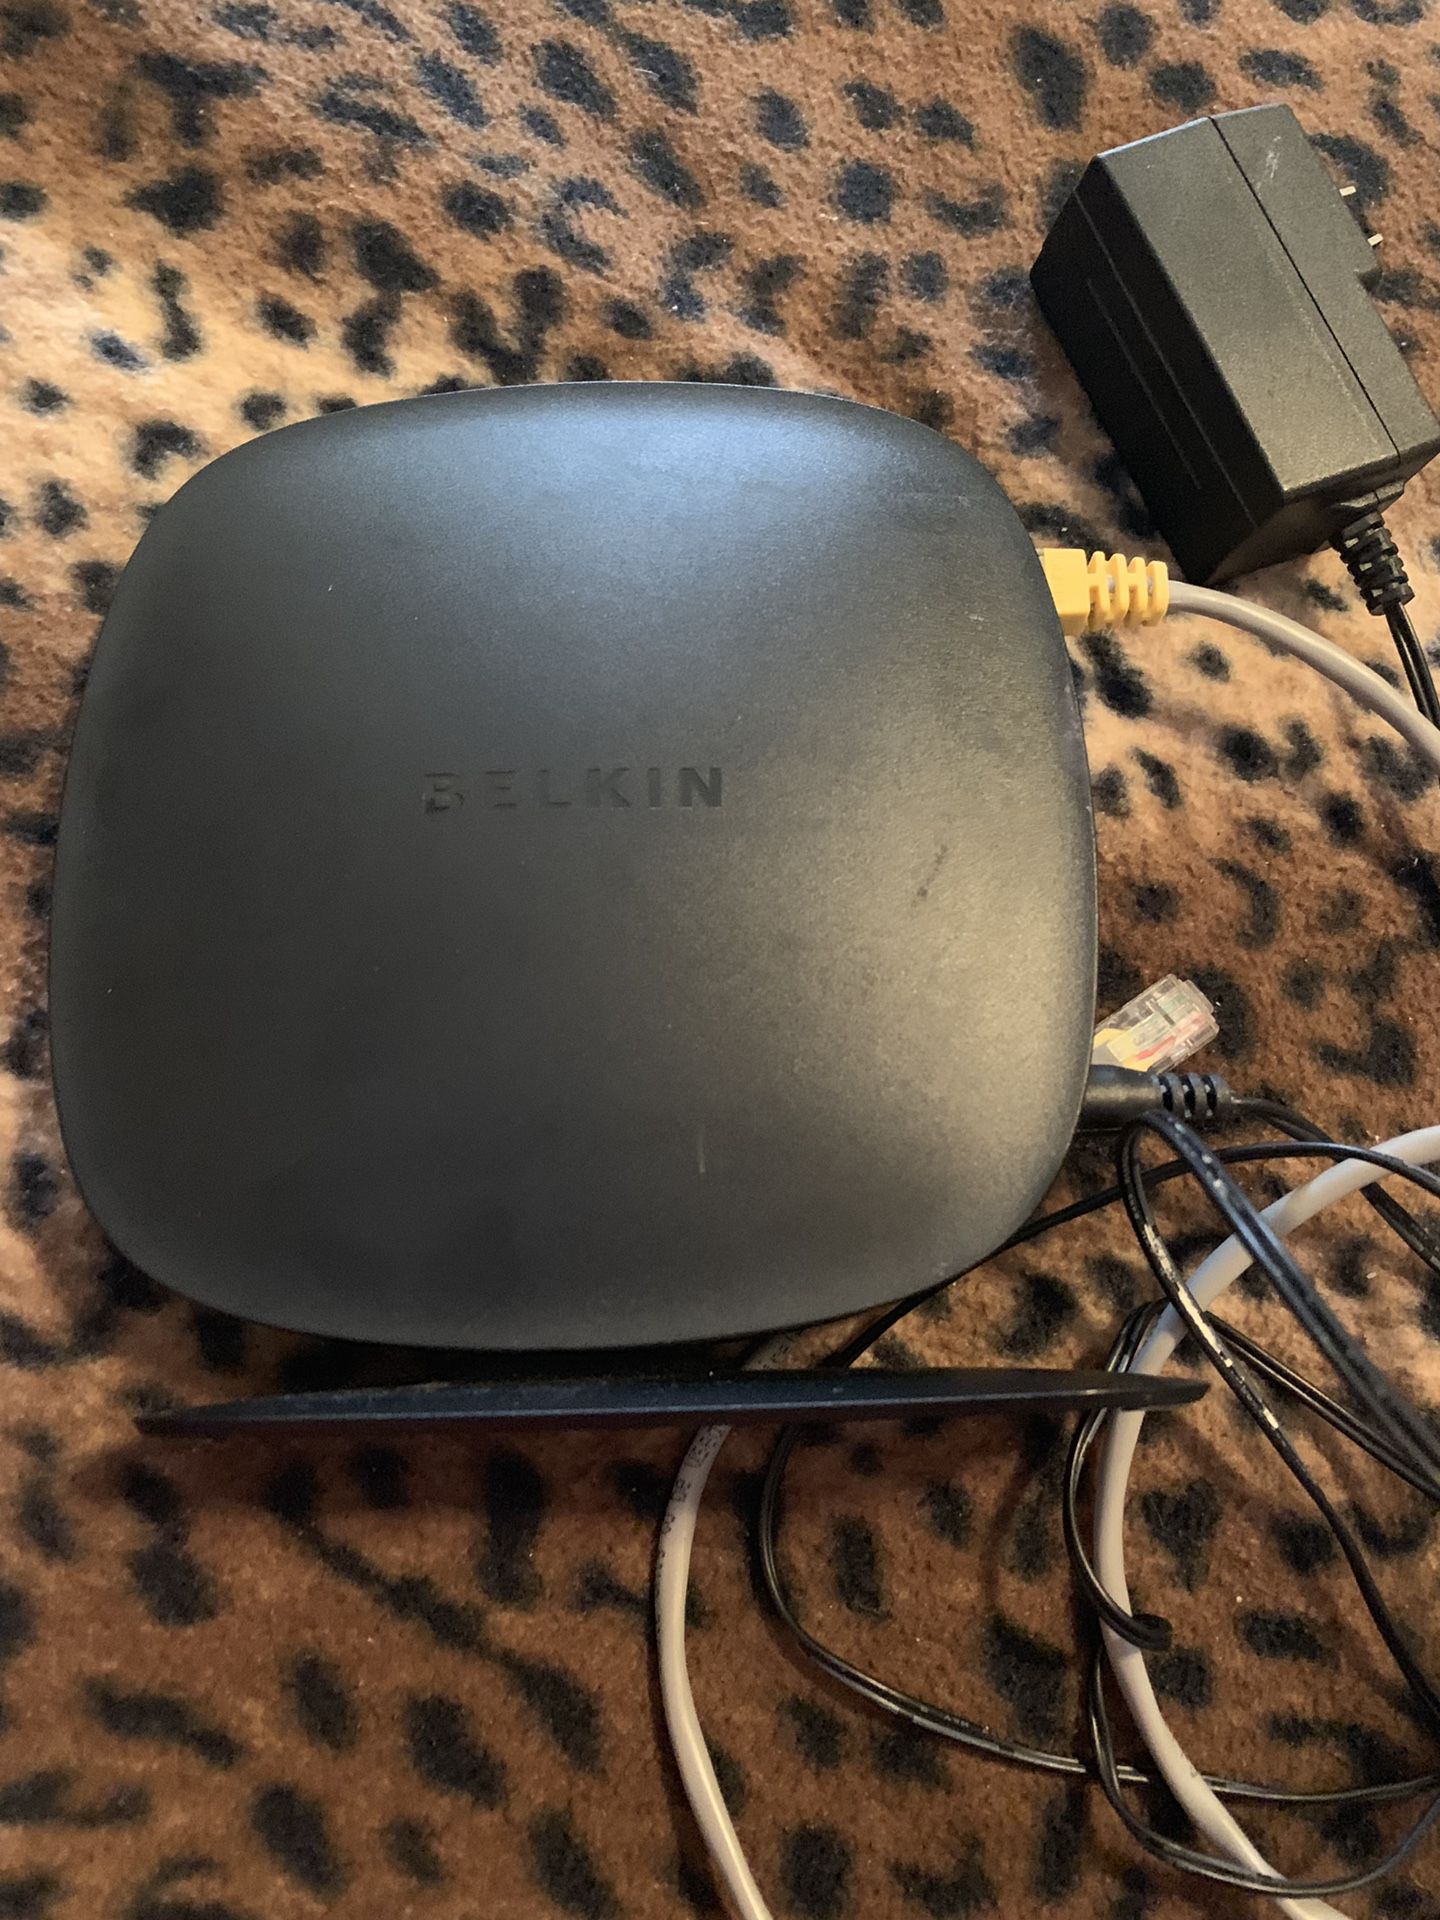 Belkin wireless Router